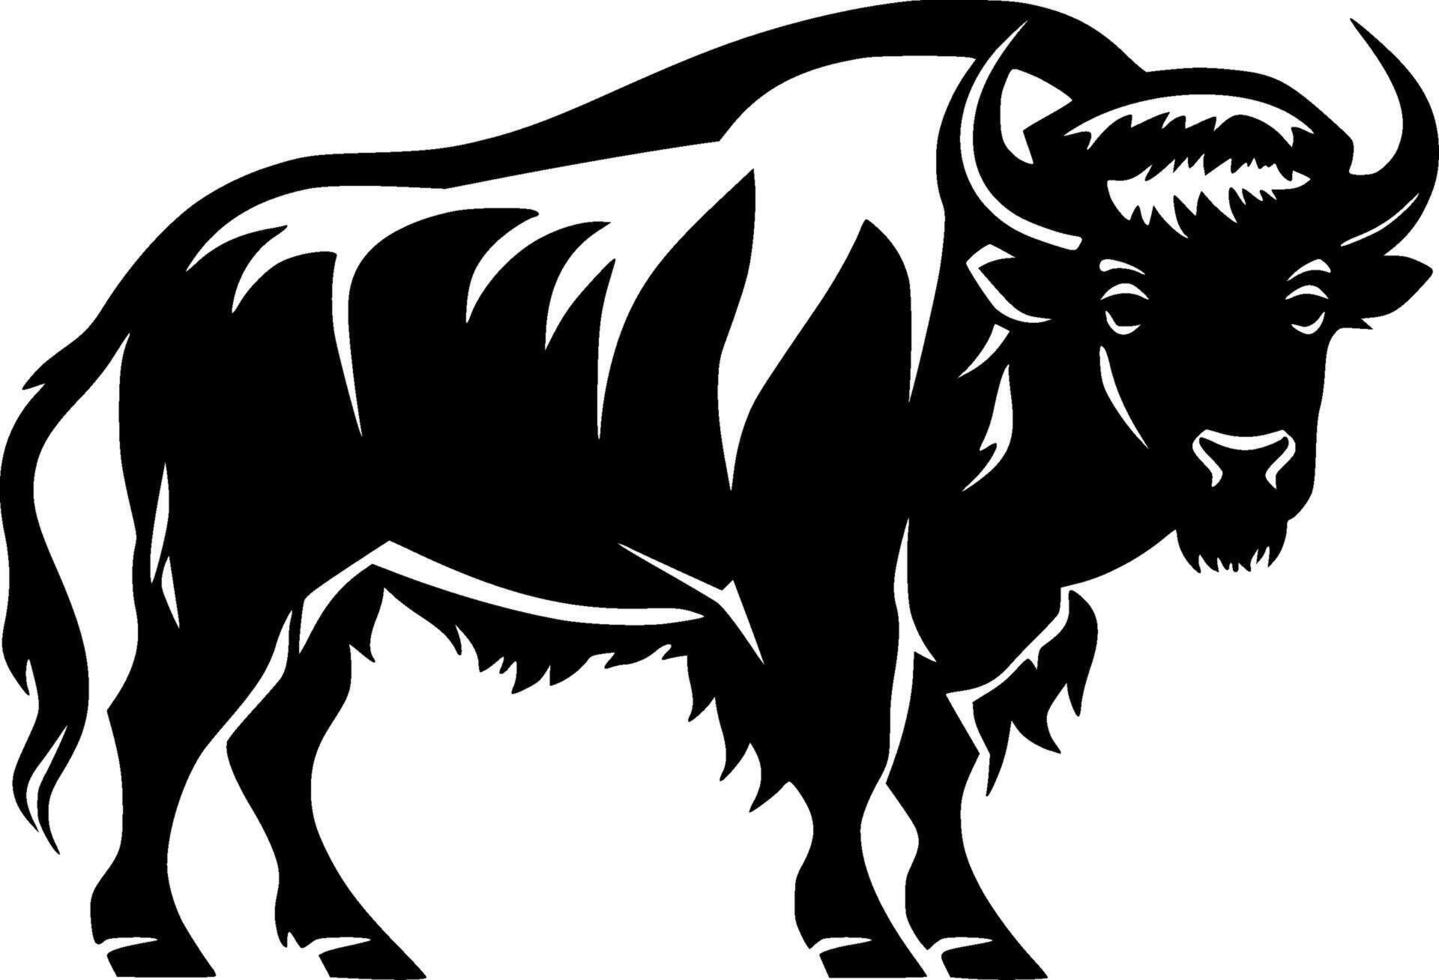 bison - svart och vit isolerat ikon - vektor illustration